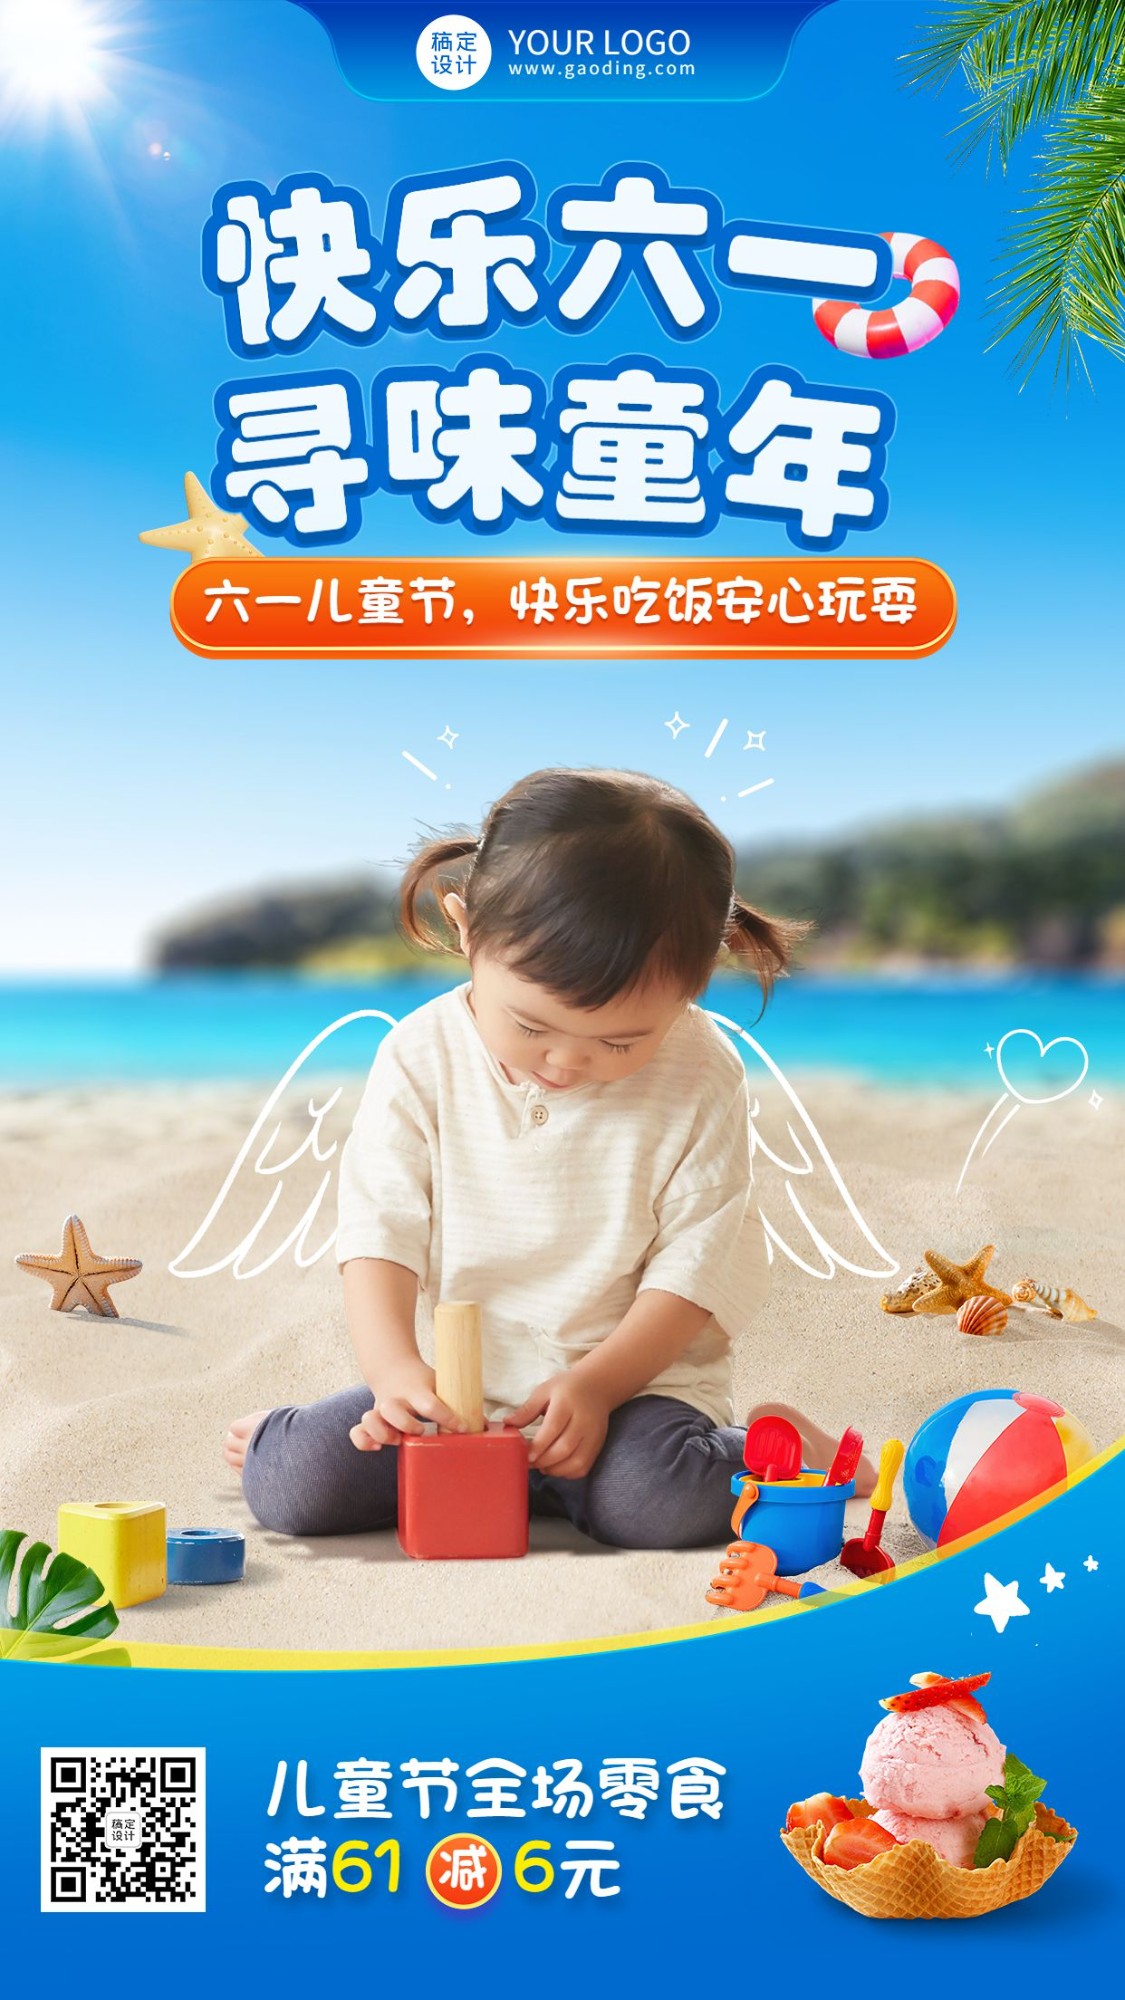 六一儿童节节日祝福实景合成手机海报预览效果